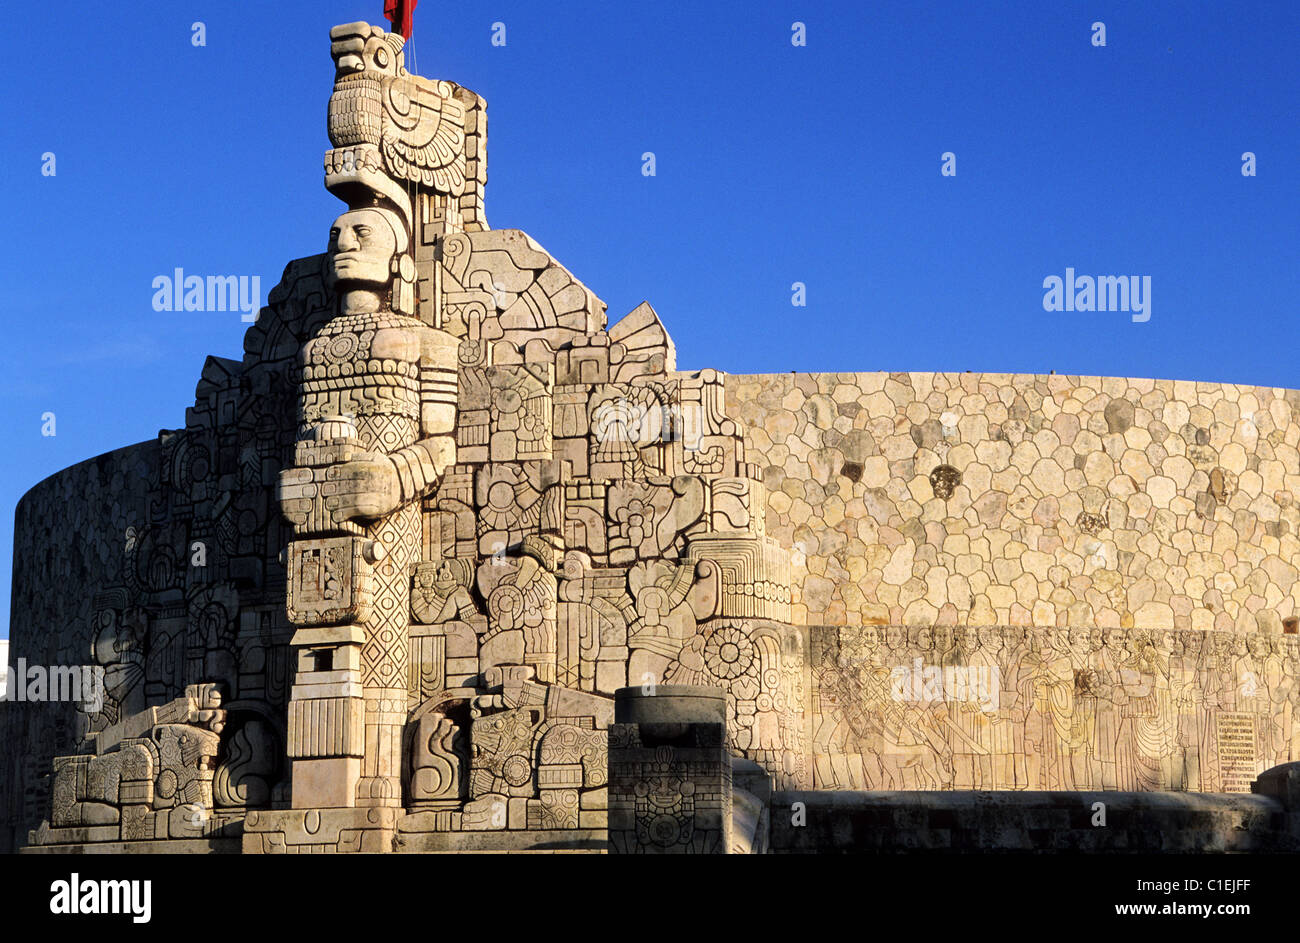 Mexico, Yucatan State, Merida, Monumento a la Bandera (monument to the ...